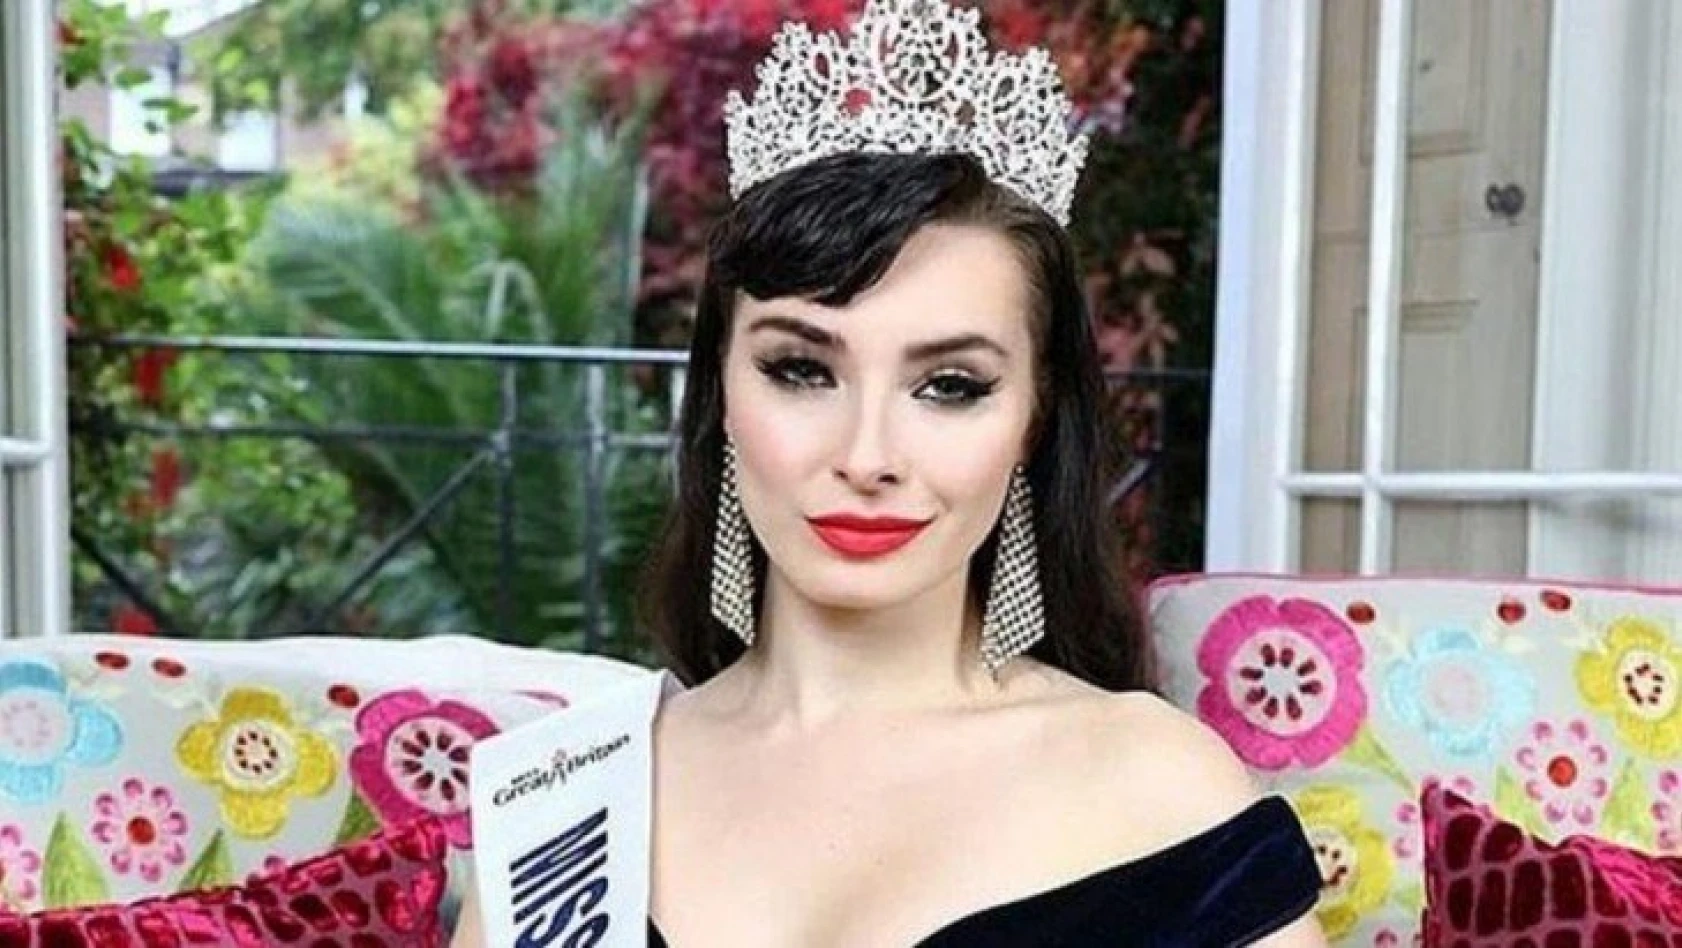 Güzellik kraliçesi Portia-Valis Volkova'yı çıplak fotoğrafları yaktı